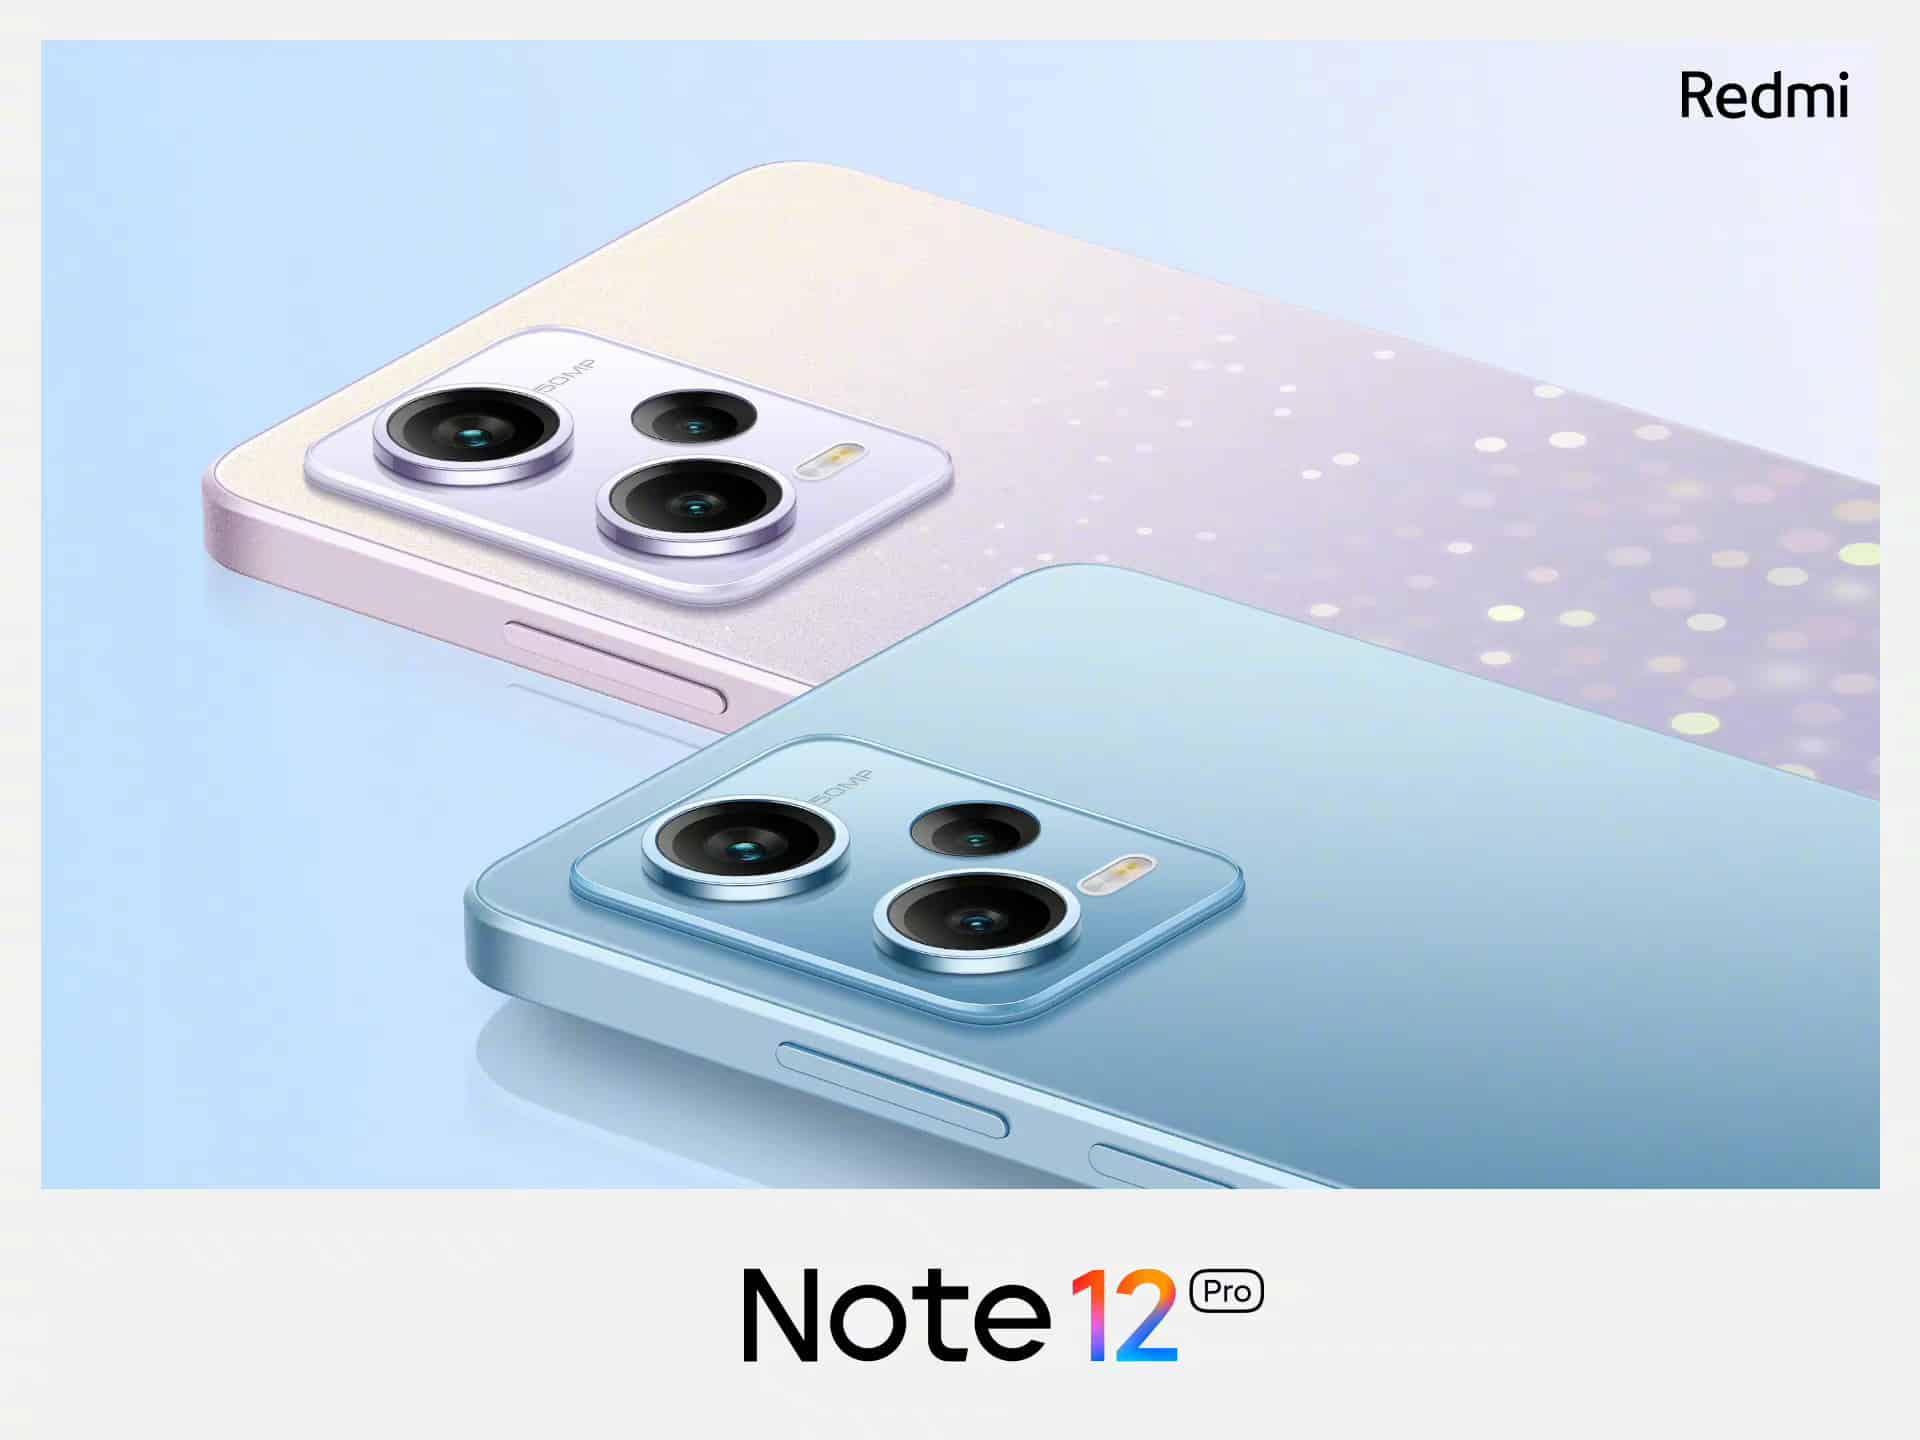 Redmi Note 12 Pro colors